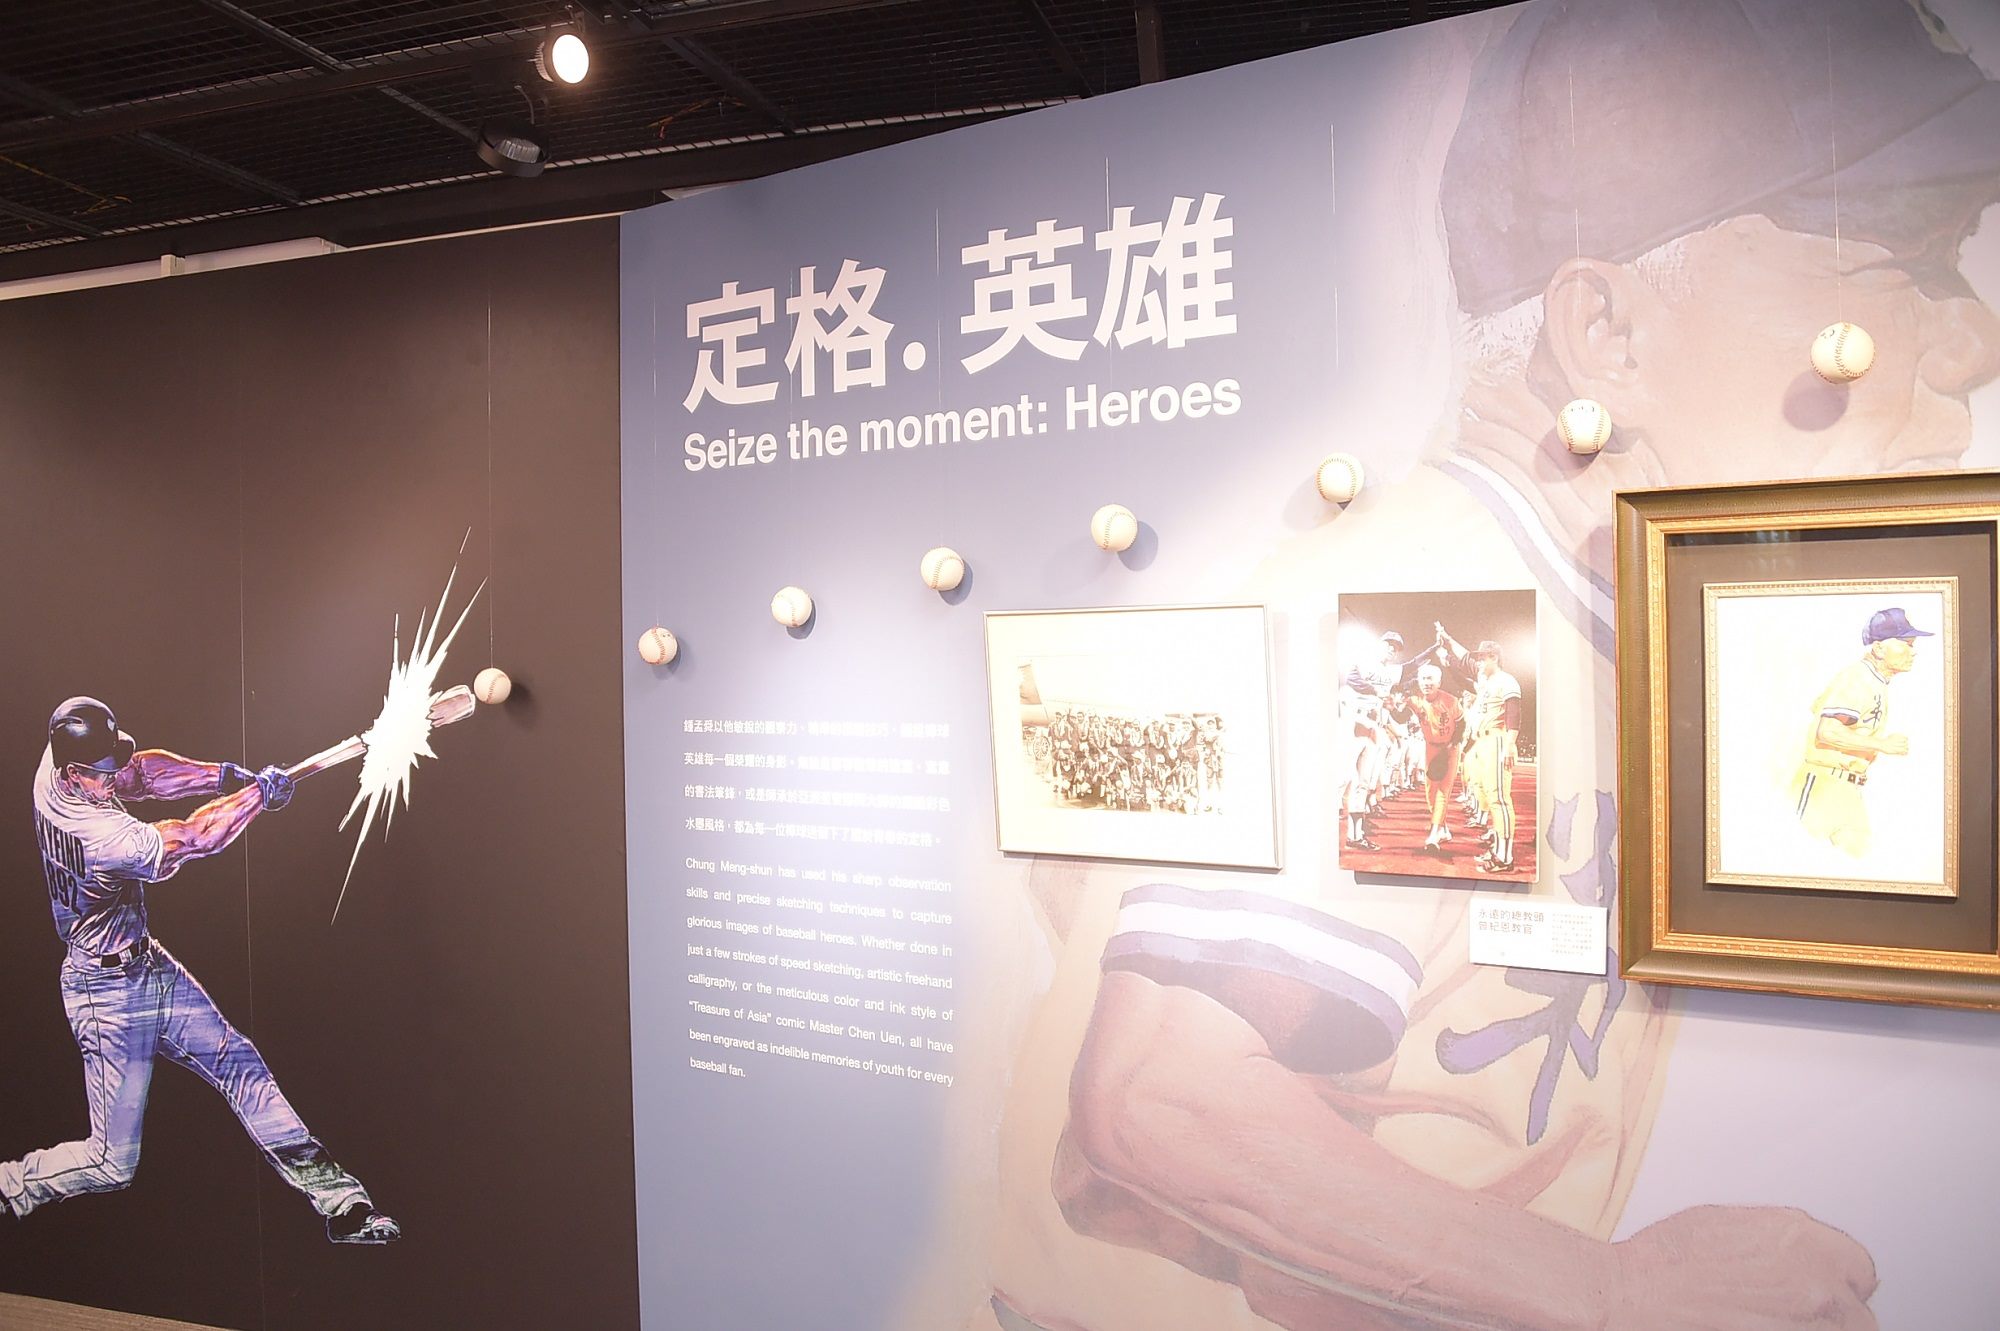 野球風雲錄特展展出漫畫家鍾孟舜「職棒英雄」的主題漫畫展。